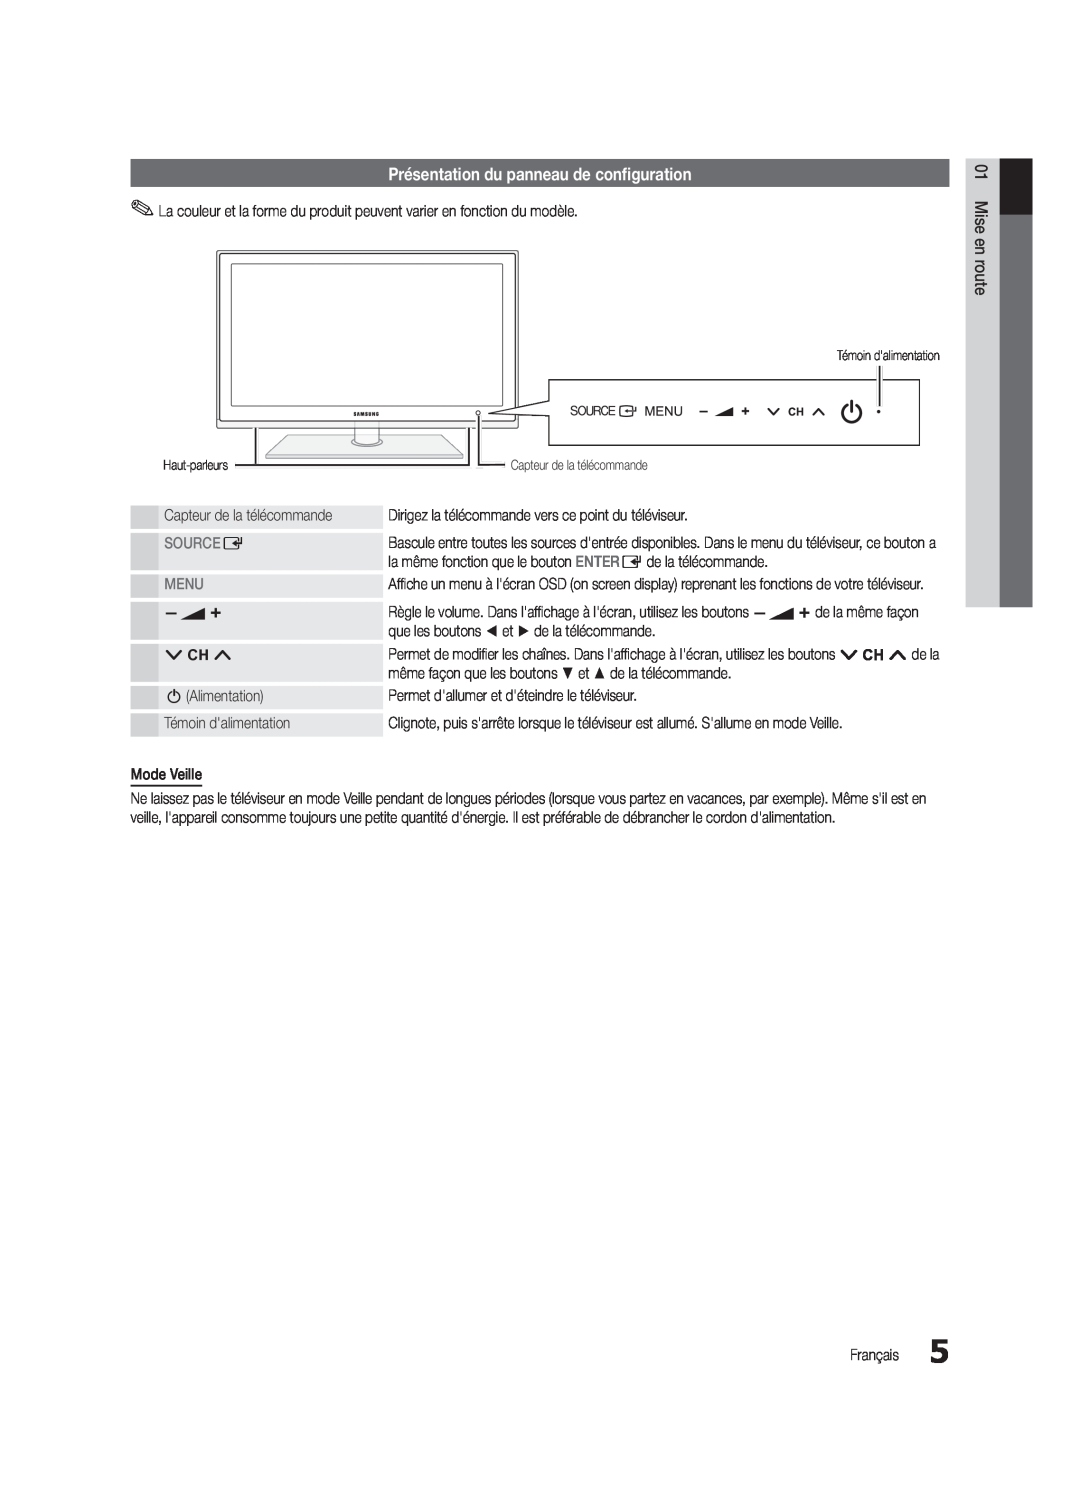 Samsung UE46C5800QKXXU, UE37C5700QSXZG manual Présentation du panneau de configuration, Source E, Menu, Mise en route 